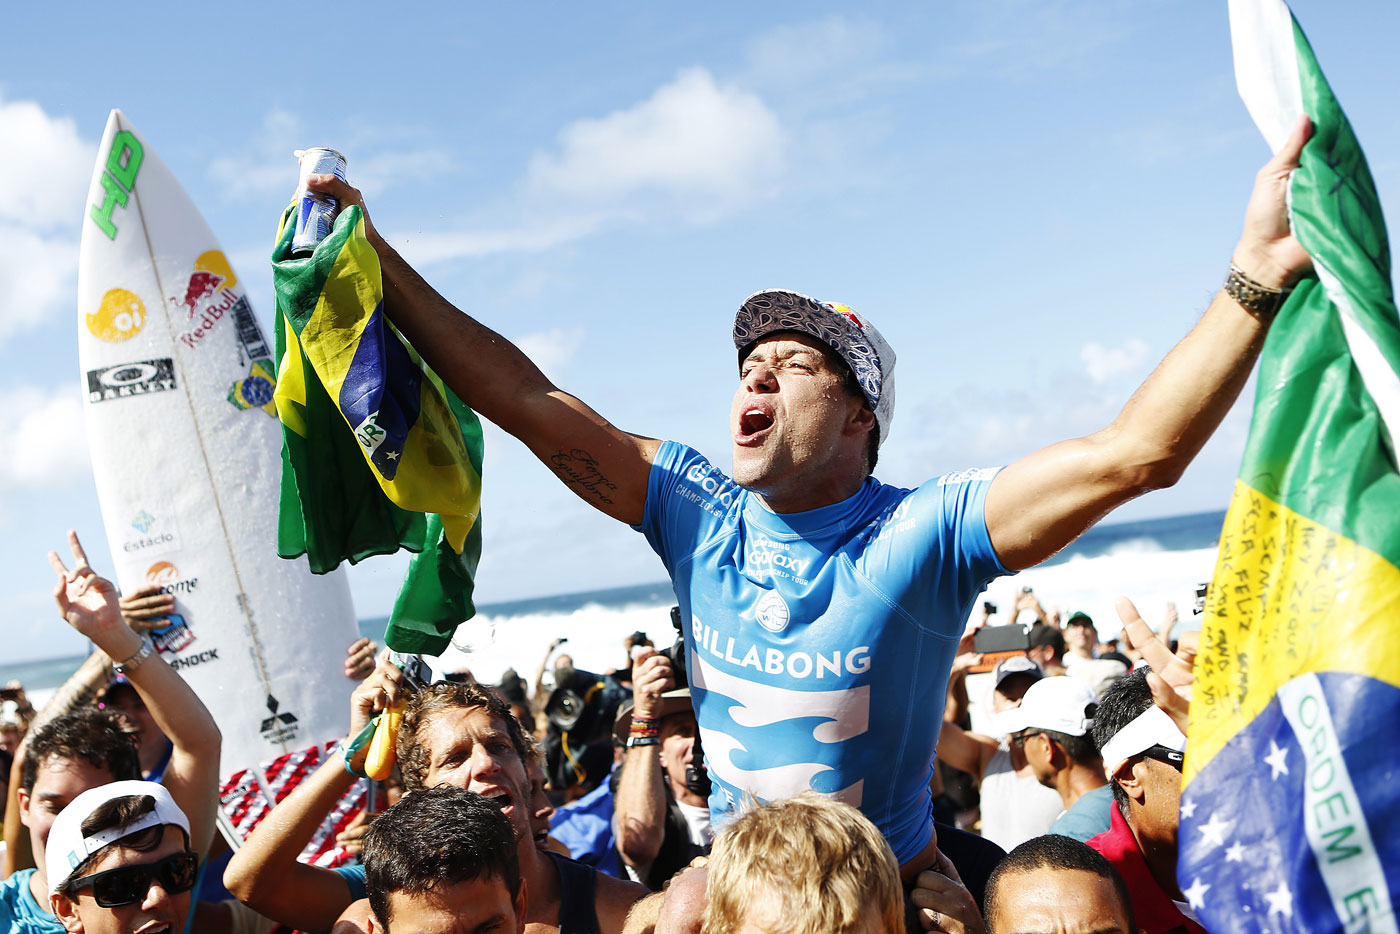 Adriano de Souza faz história em 2015. Leva o título mundial e, de quebra, é o primeiro brasileiro a vencer o Pipeline Masters. Além disso, consolida o movimento Brazilian Storm, ao vencer logo depois do primeiro título de Gabriel Medina.